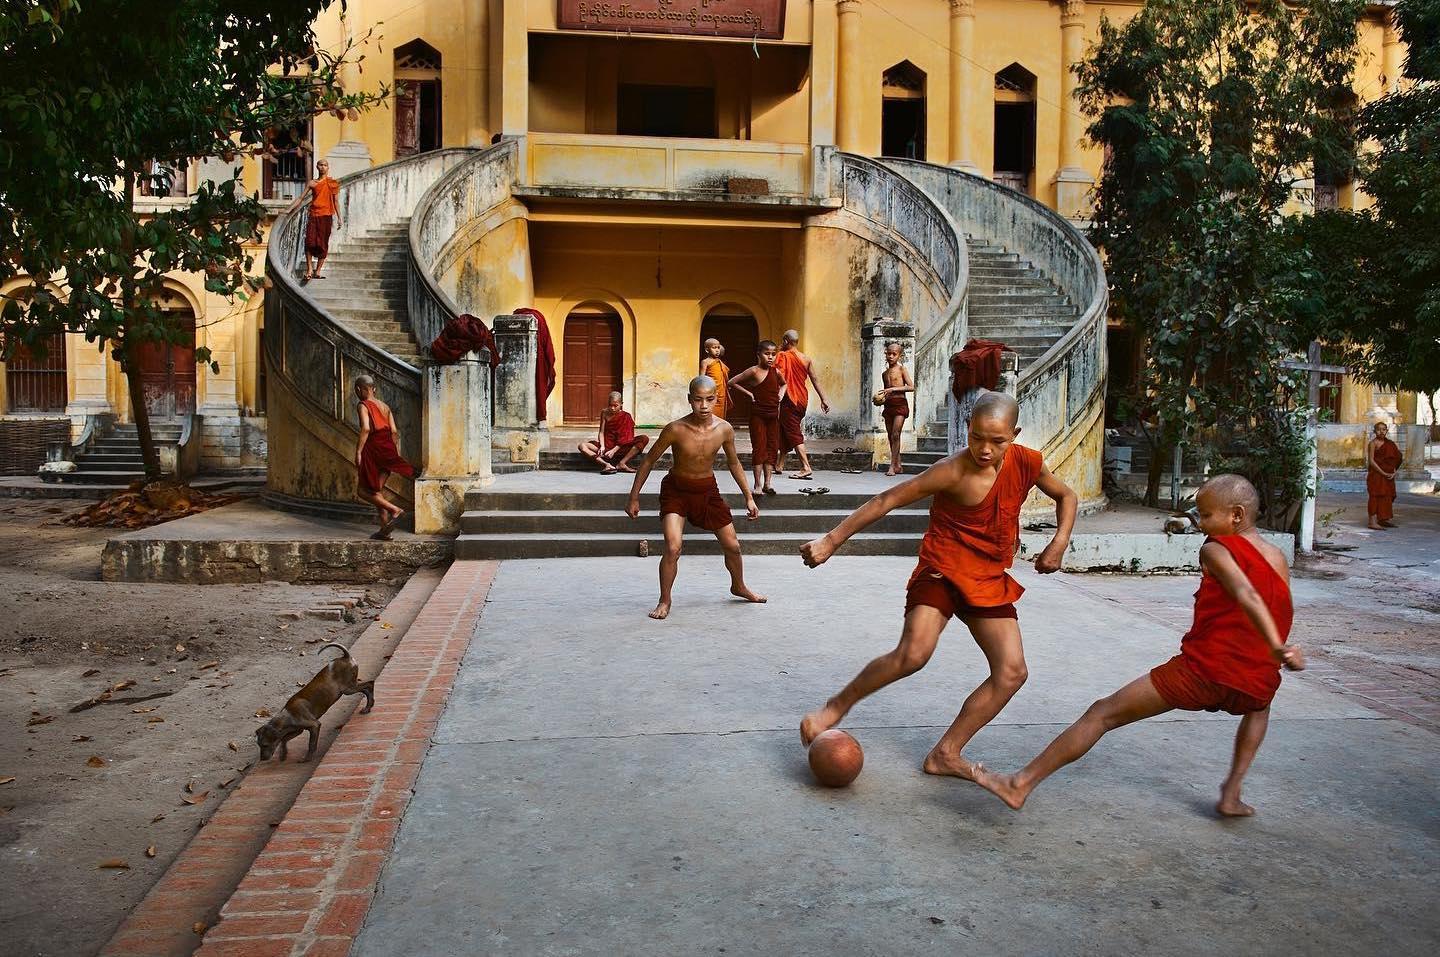  踢足球的和尚，Steve McCurry摄于2010年缅甸曼德勒。 